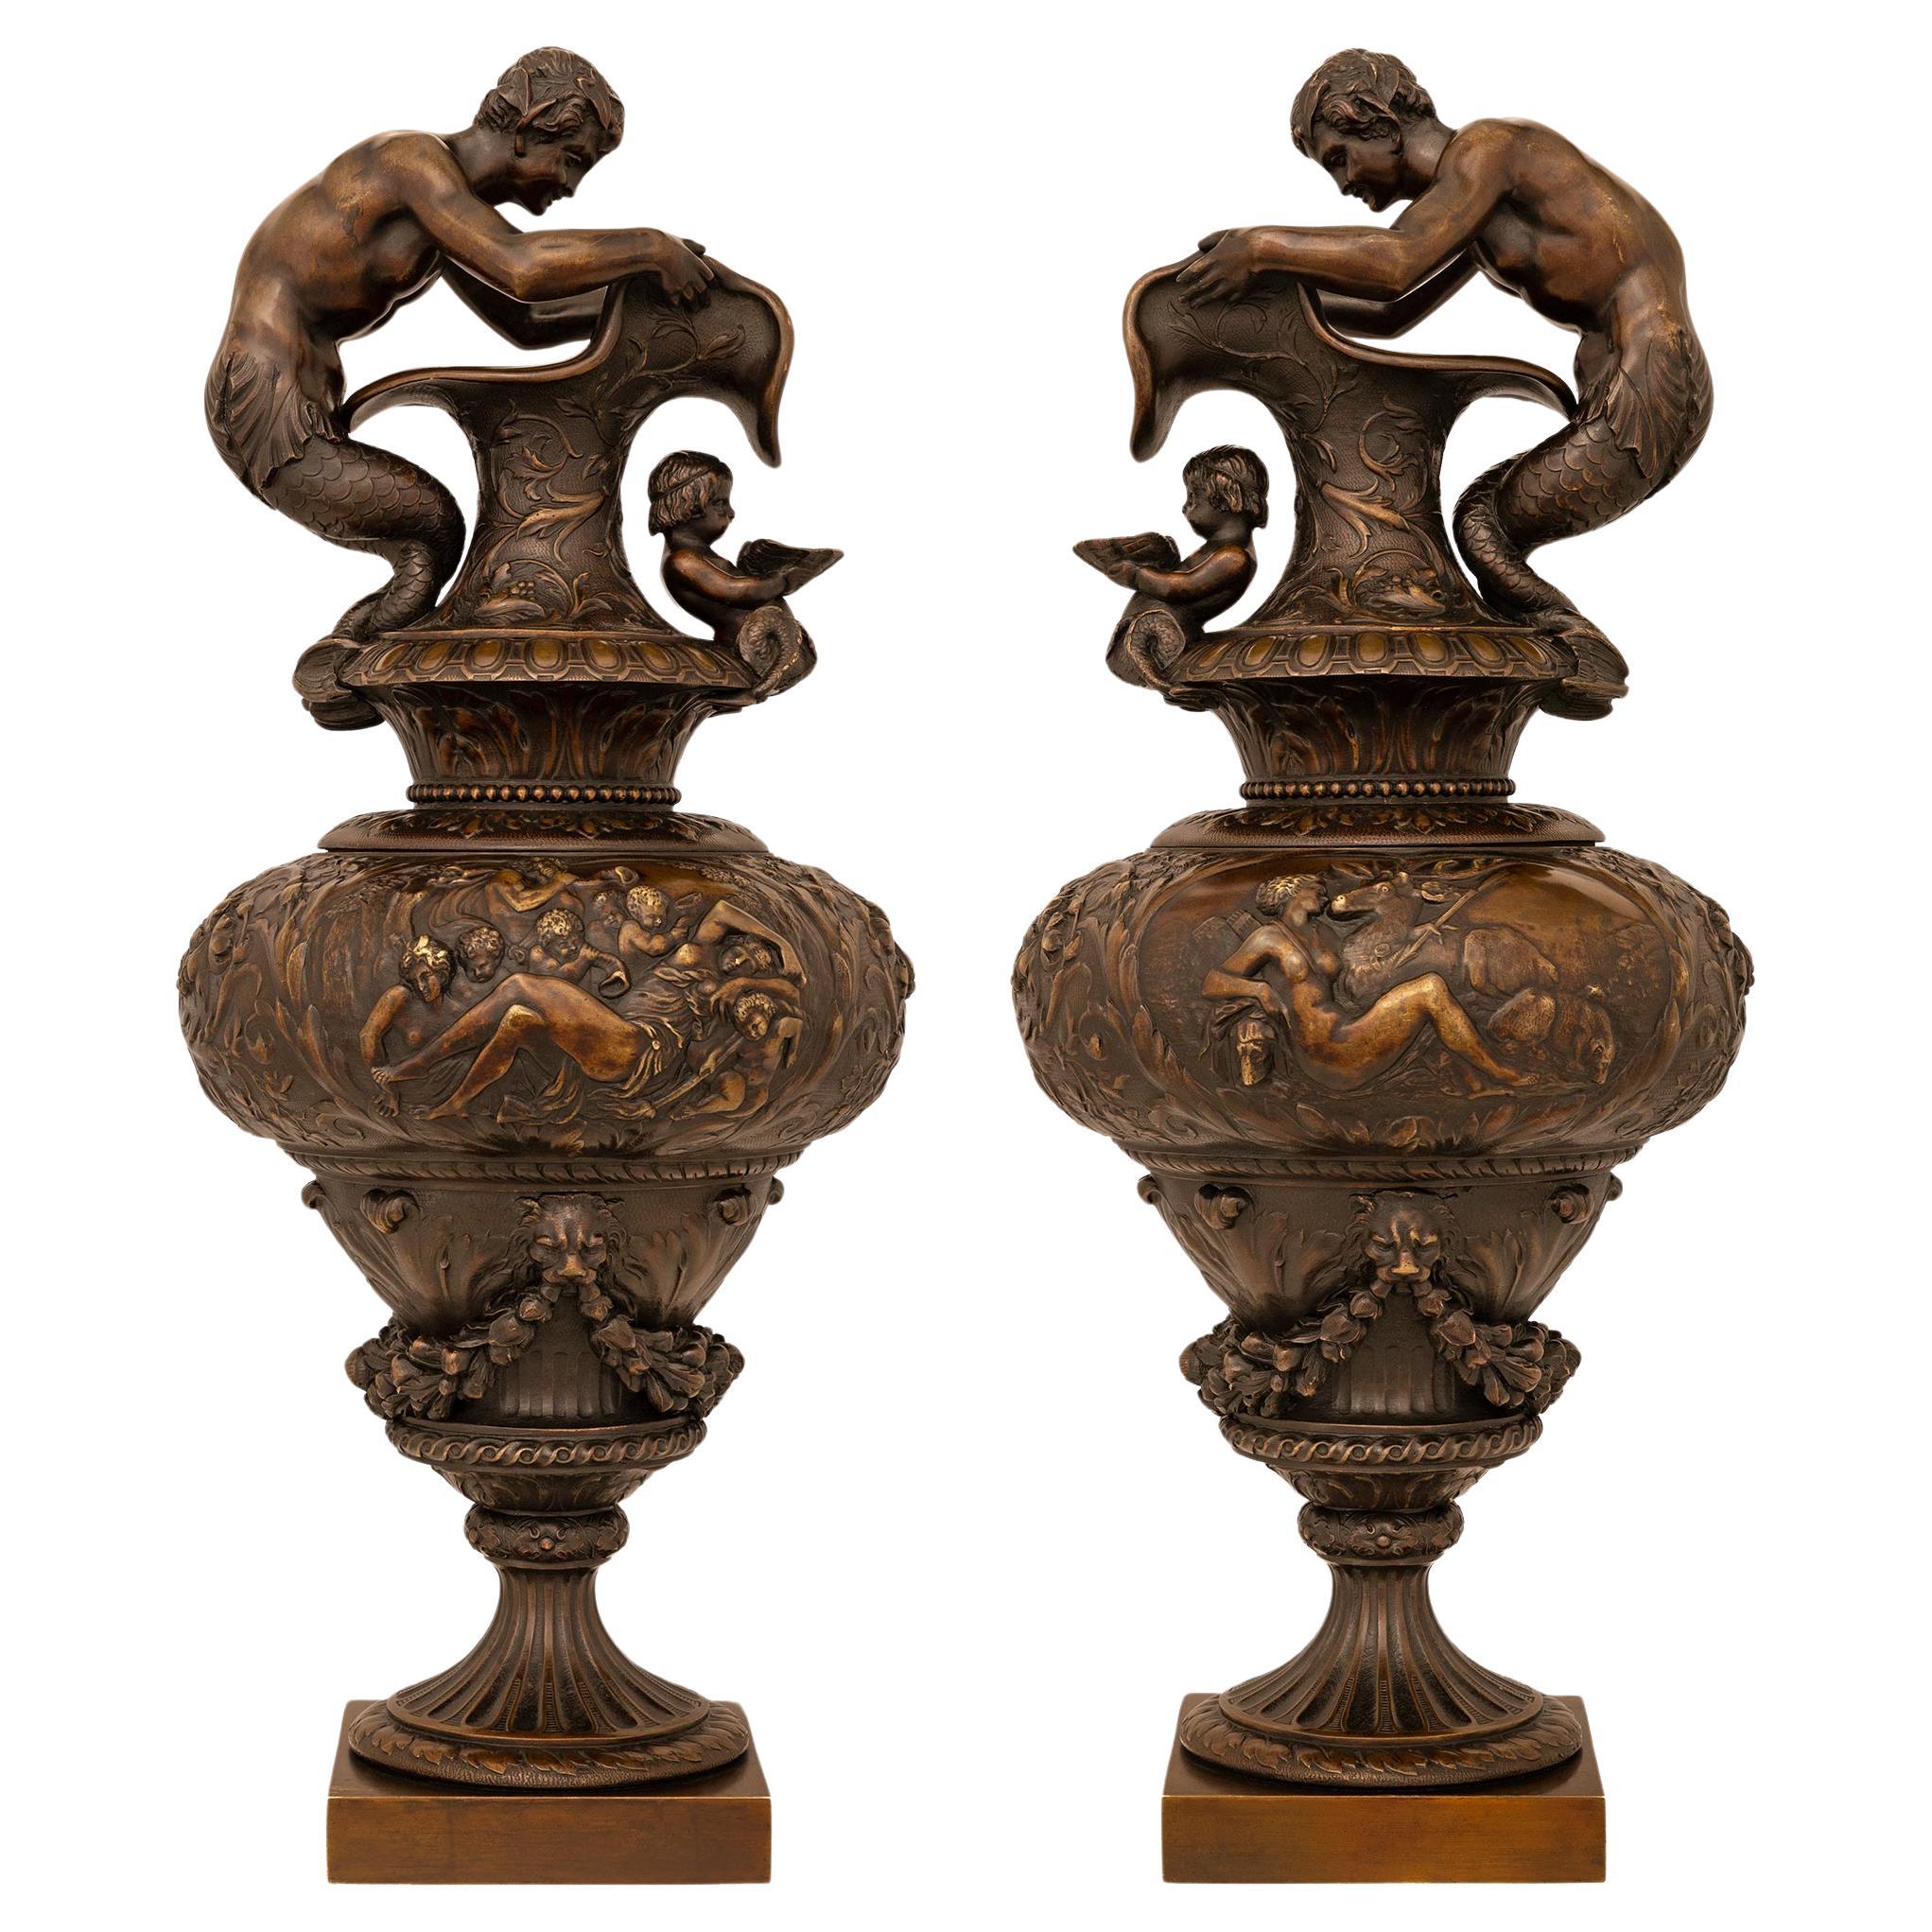 Paire d'aiguières/urnes françaises du 19ème siècle en bronze patiné de style Renaissance